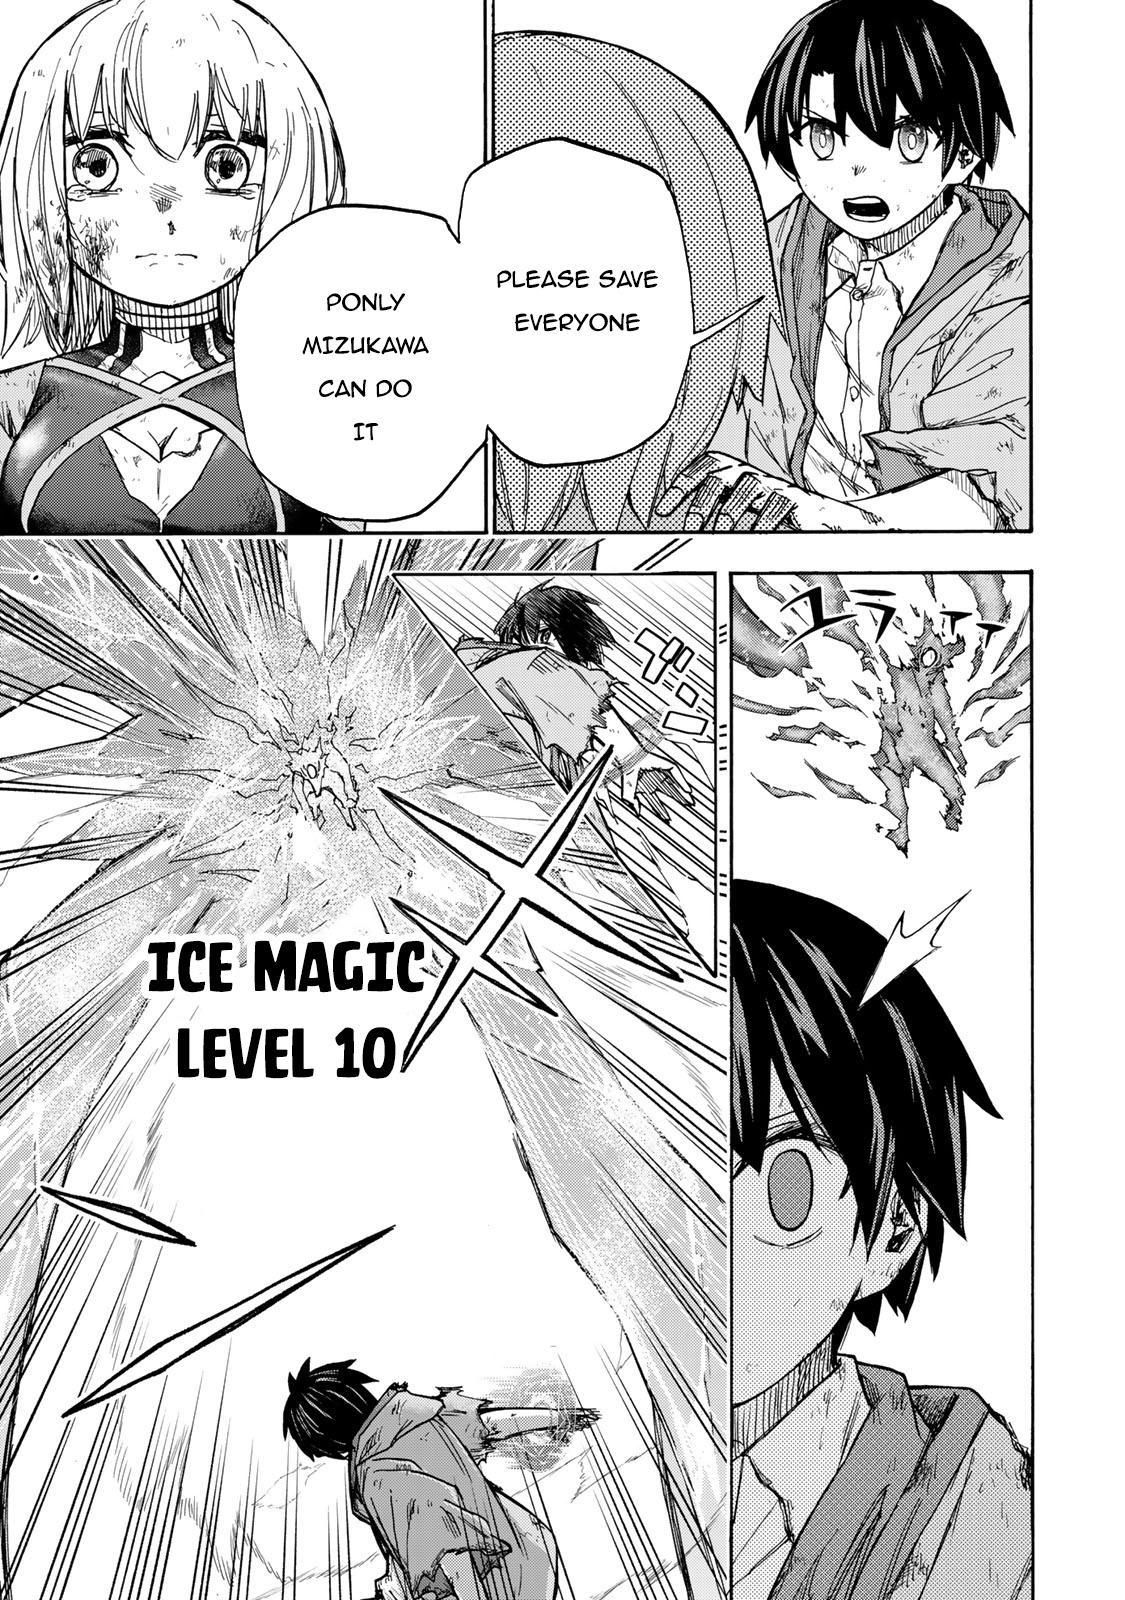 Saikyou de Saisoku no Mugen Level Up Ch.1 Page 16 - Mangago